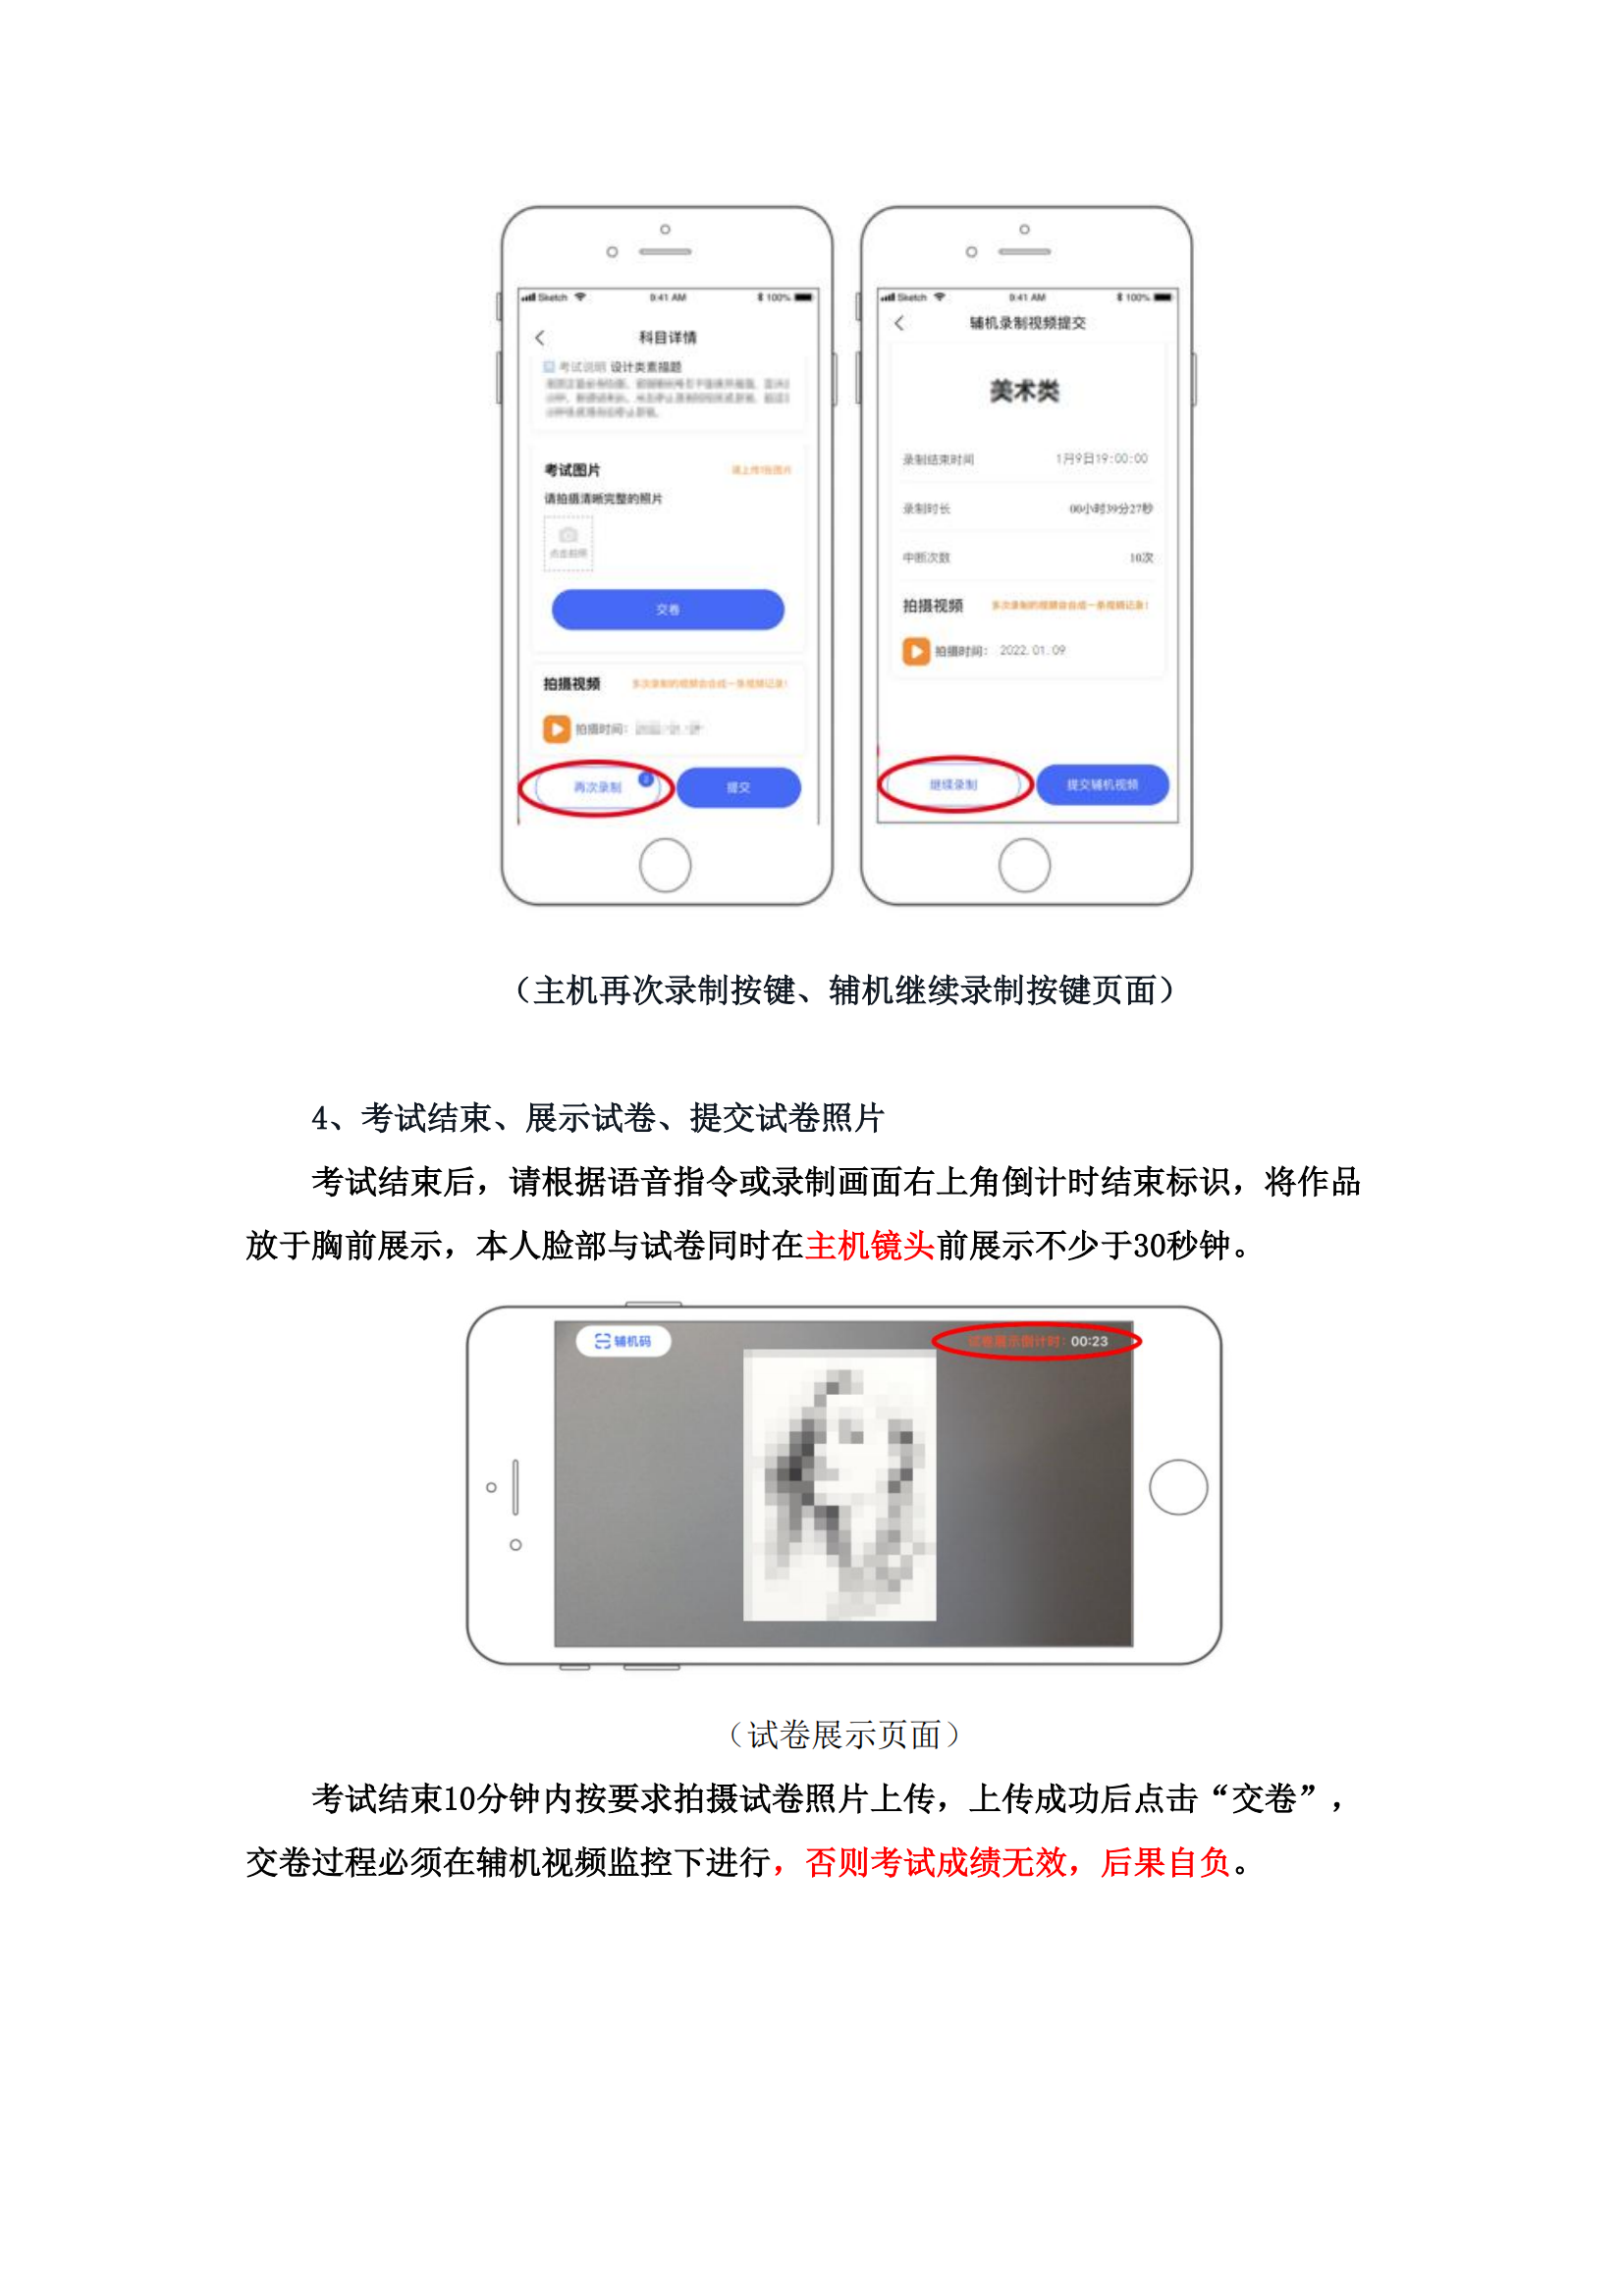 附件1：广州美术学院艺术升APP网络考试操作说明_09.png